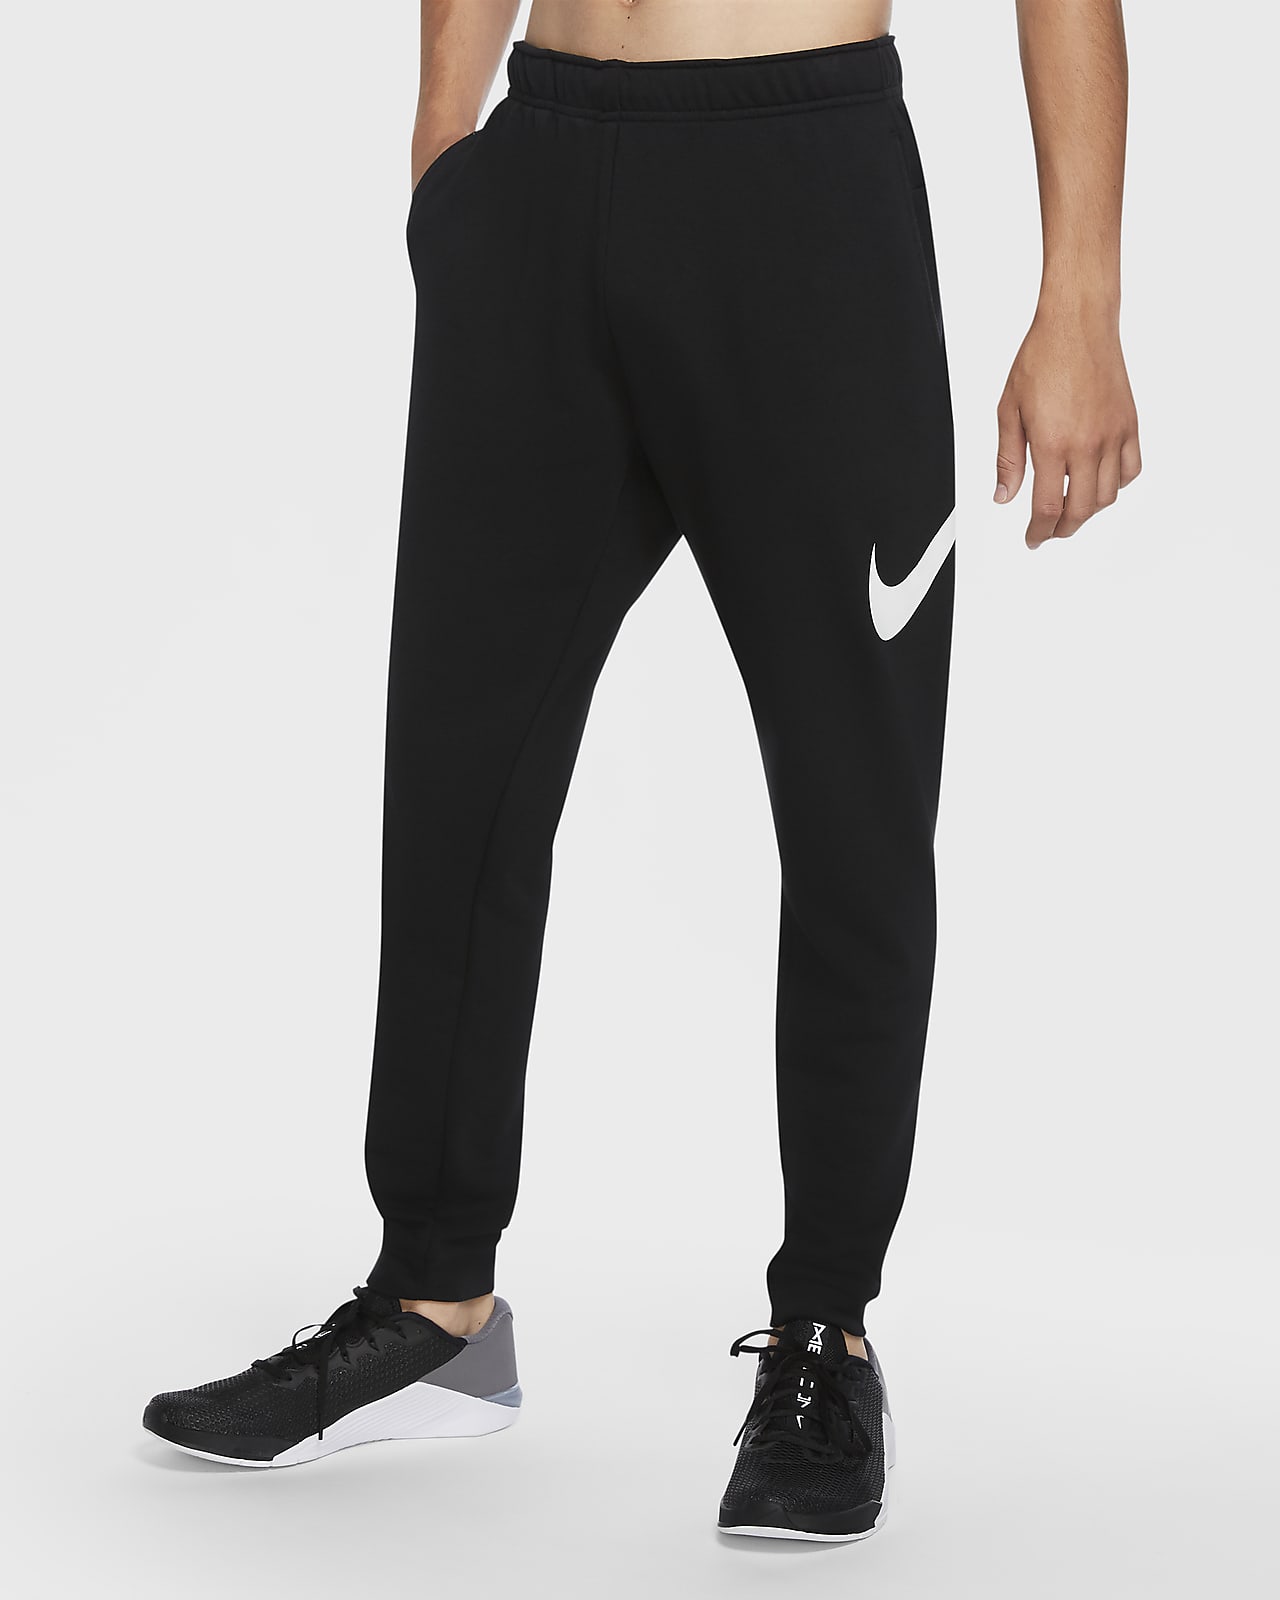 Nike Dri-FIT schmal zulaufende Trainingshose für Herren